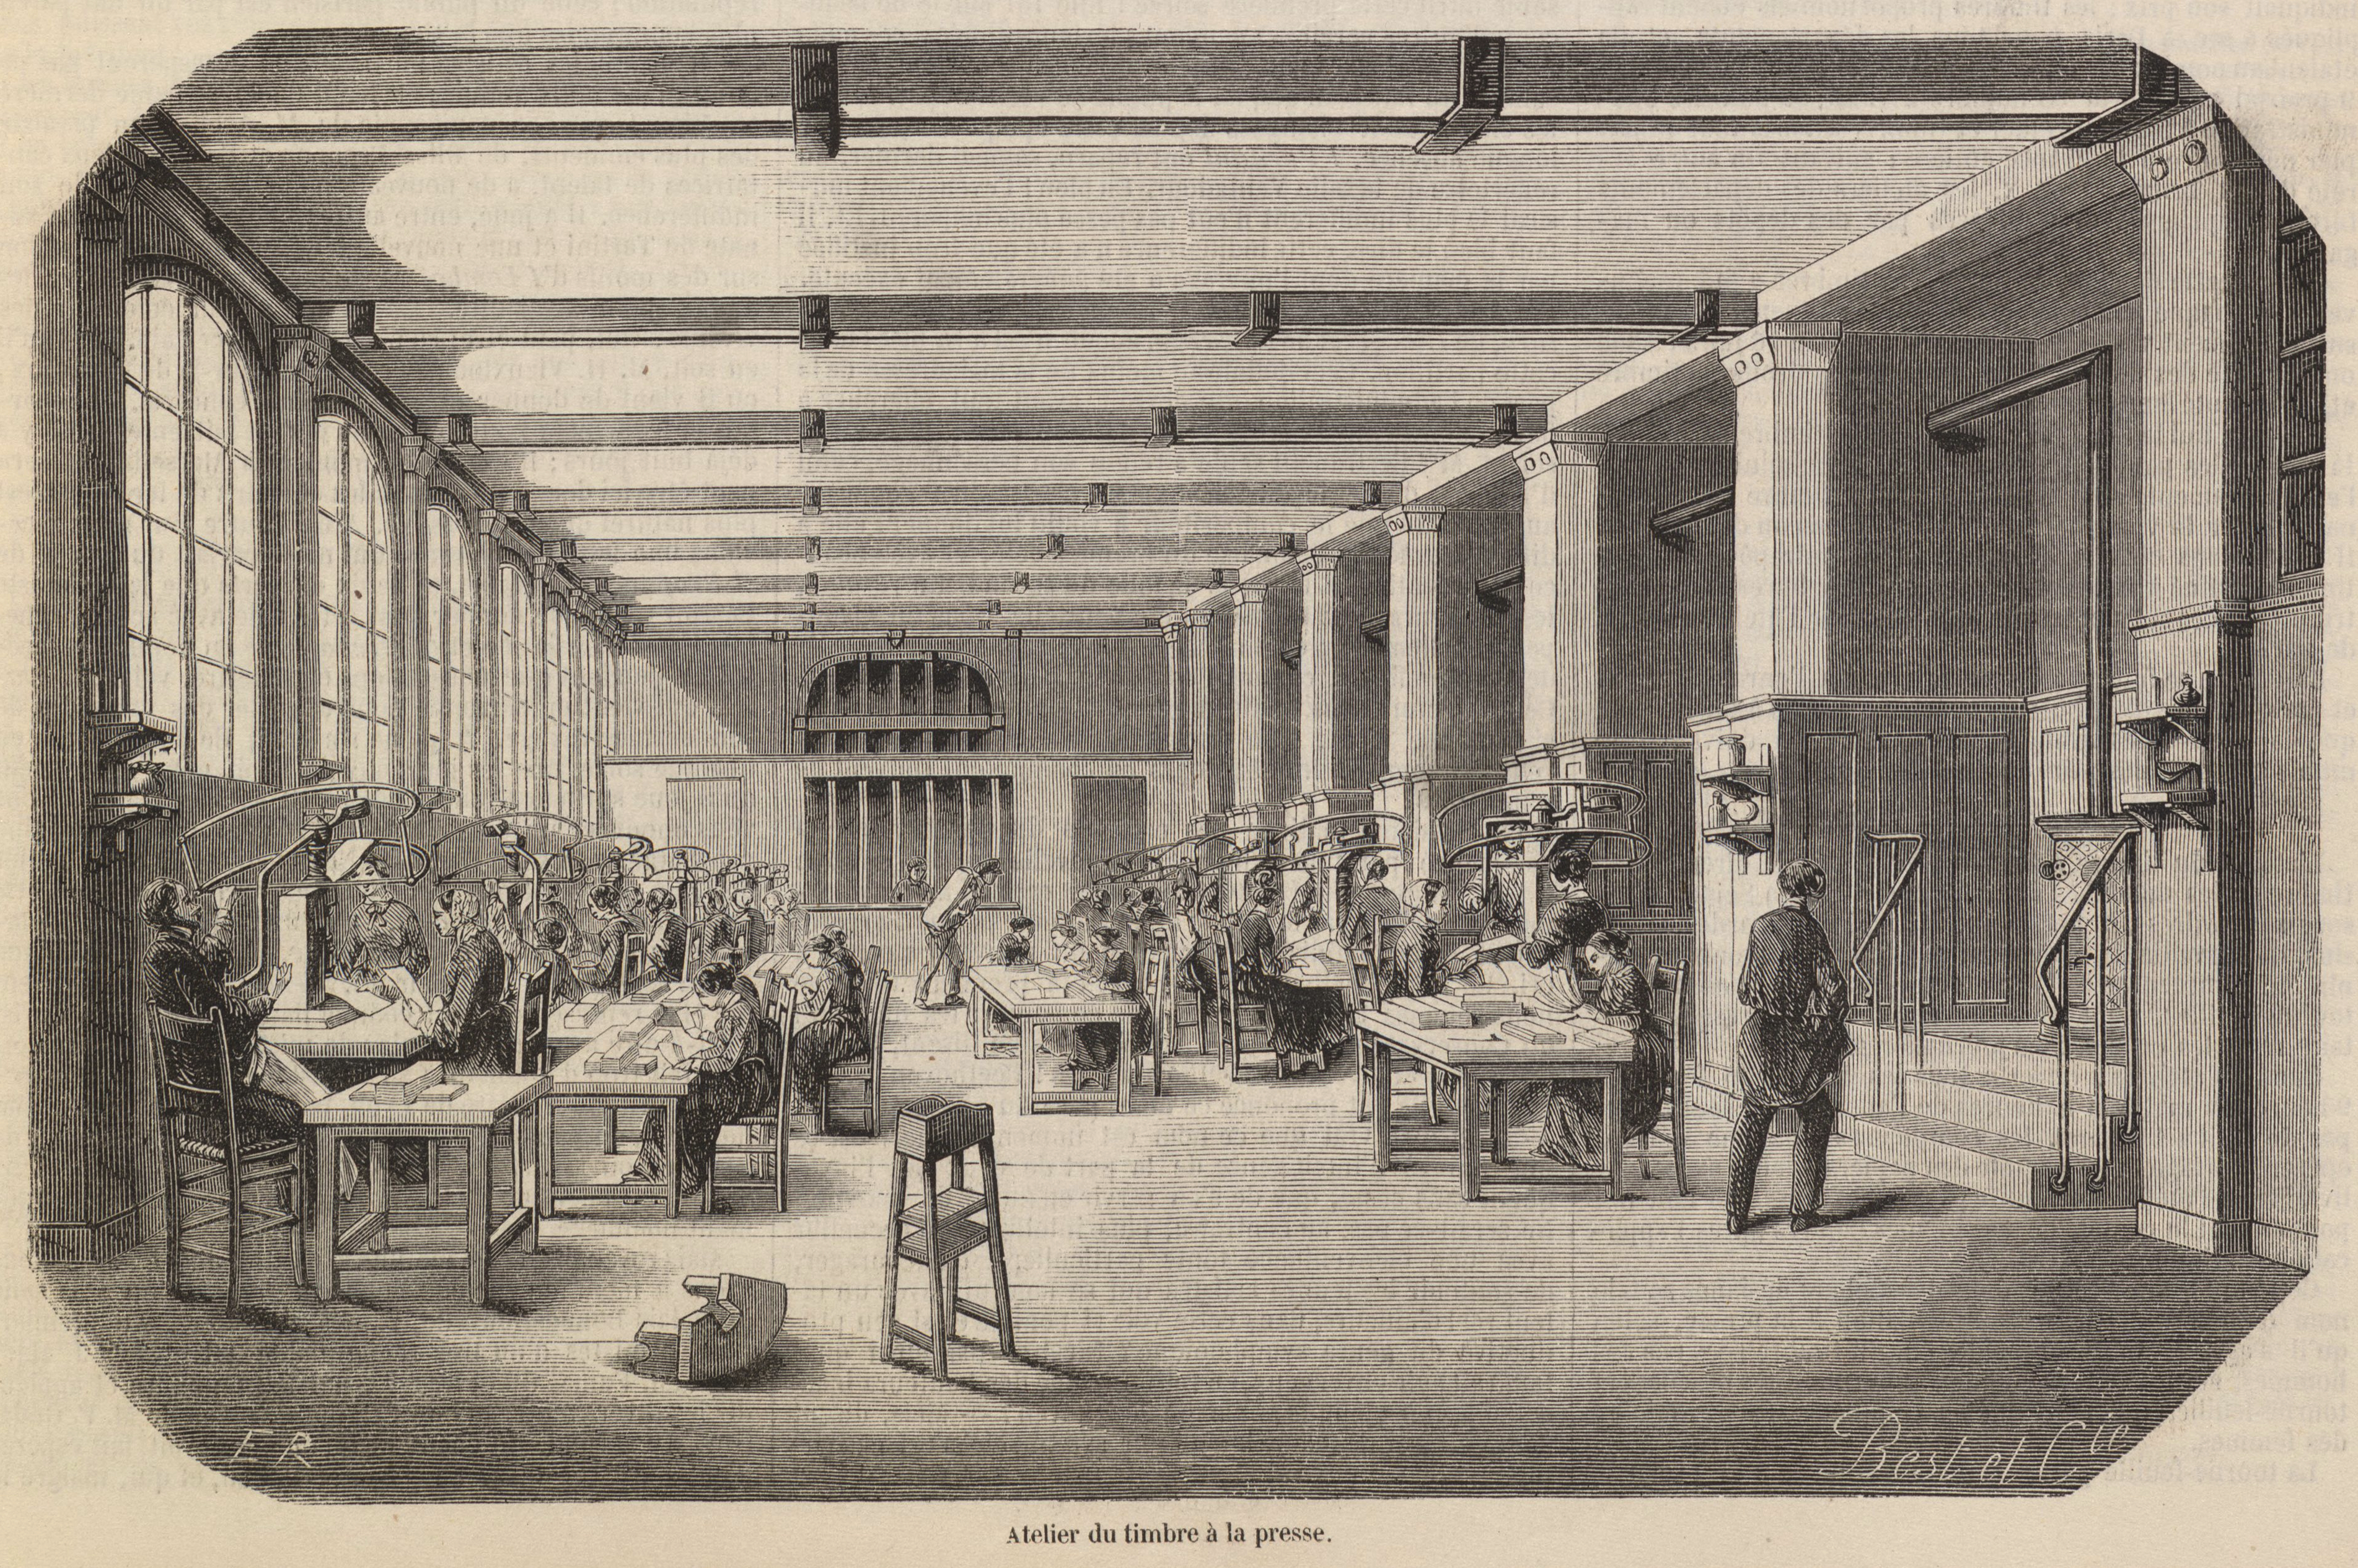 Atelier du timbre à la presse, 1853